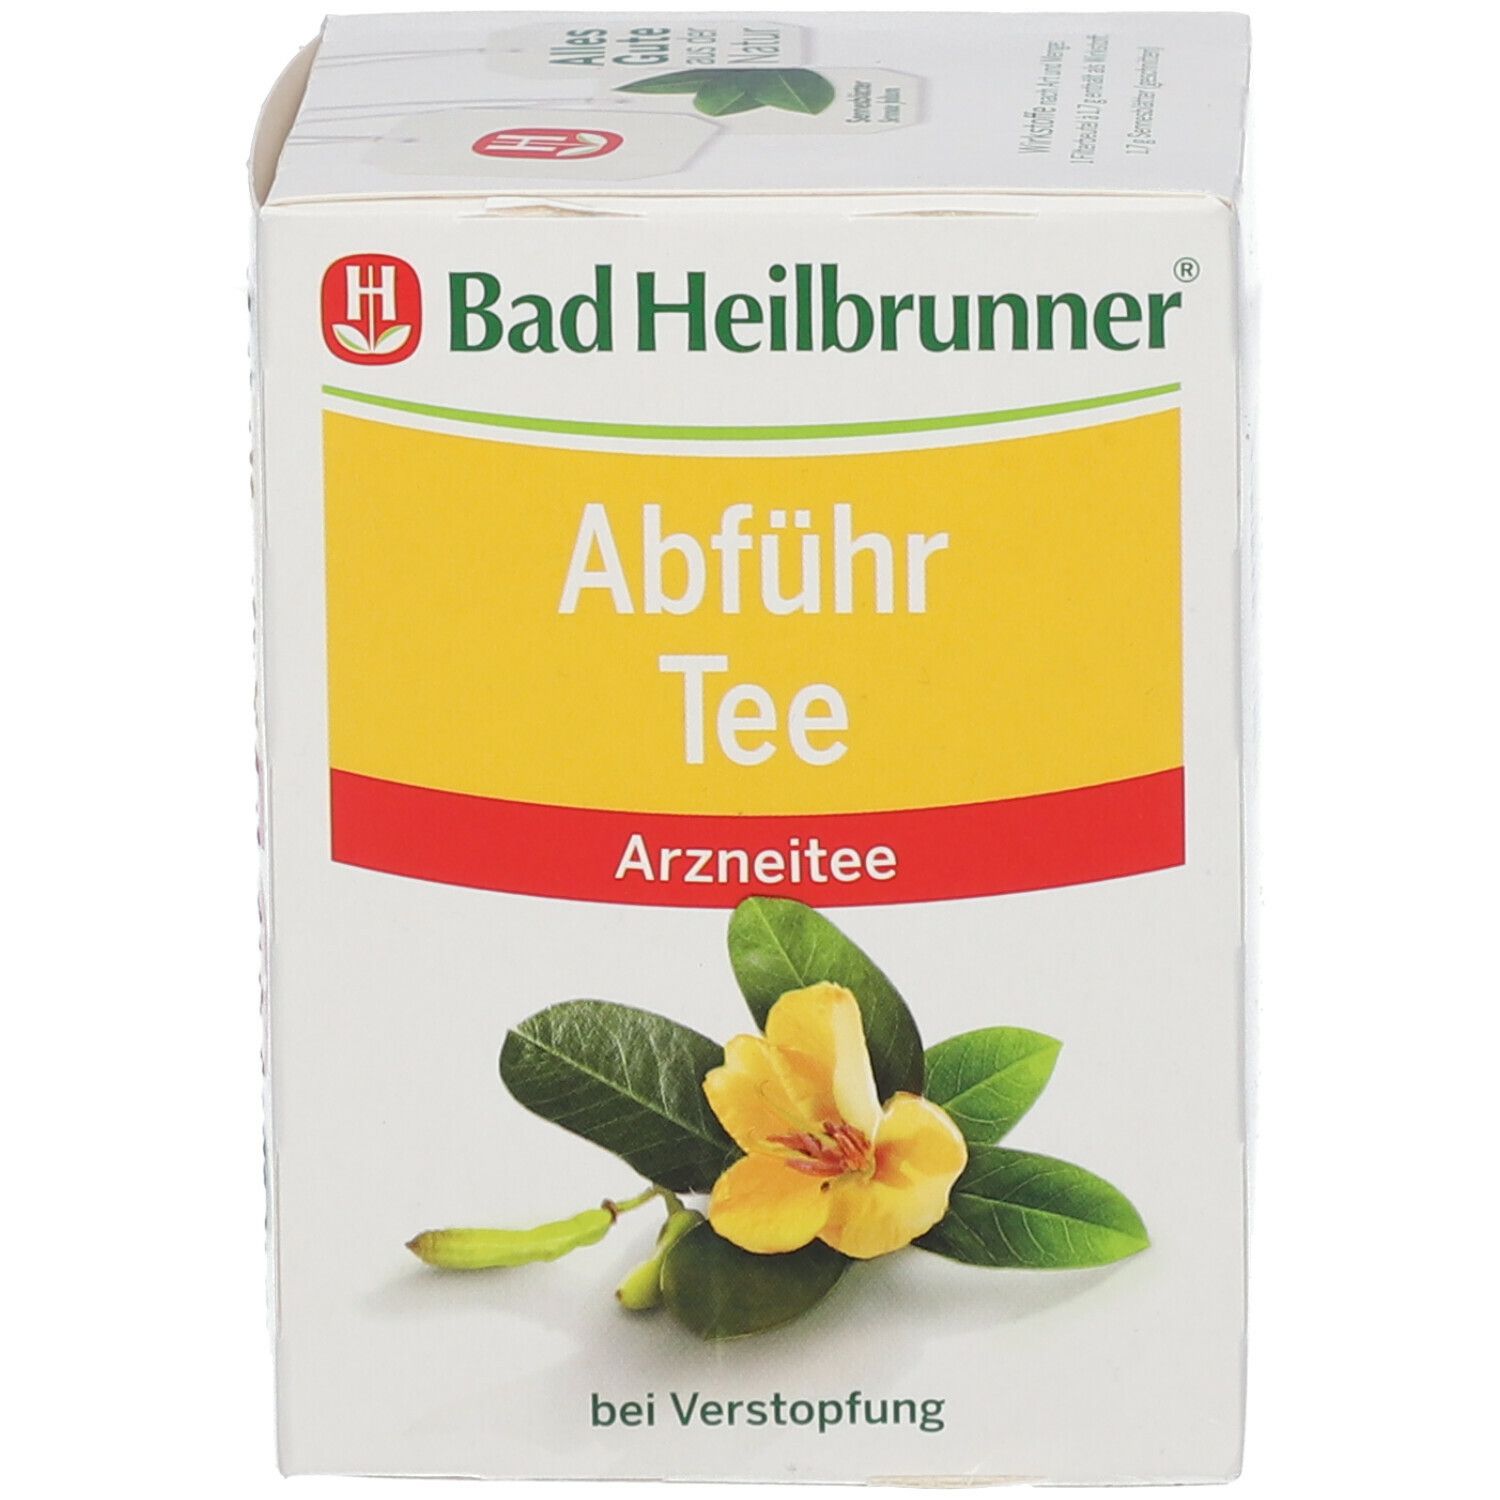 Bad Heilbrunner® Abführ Tee